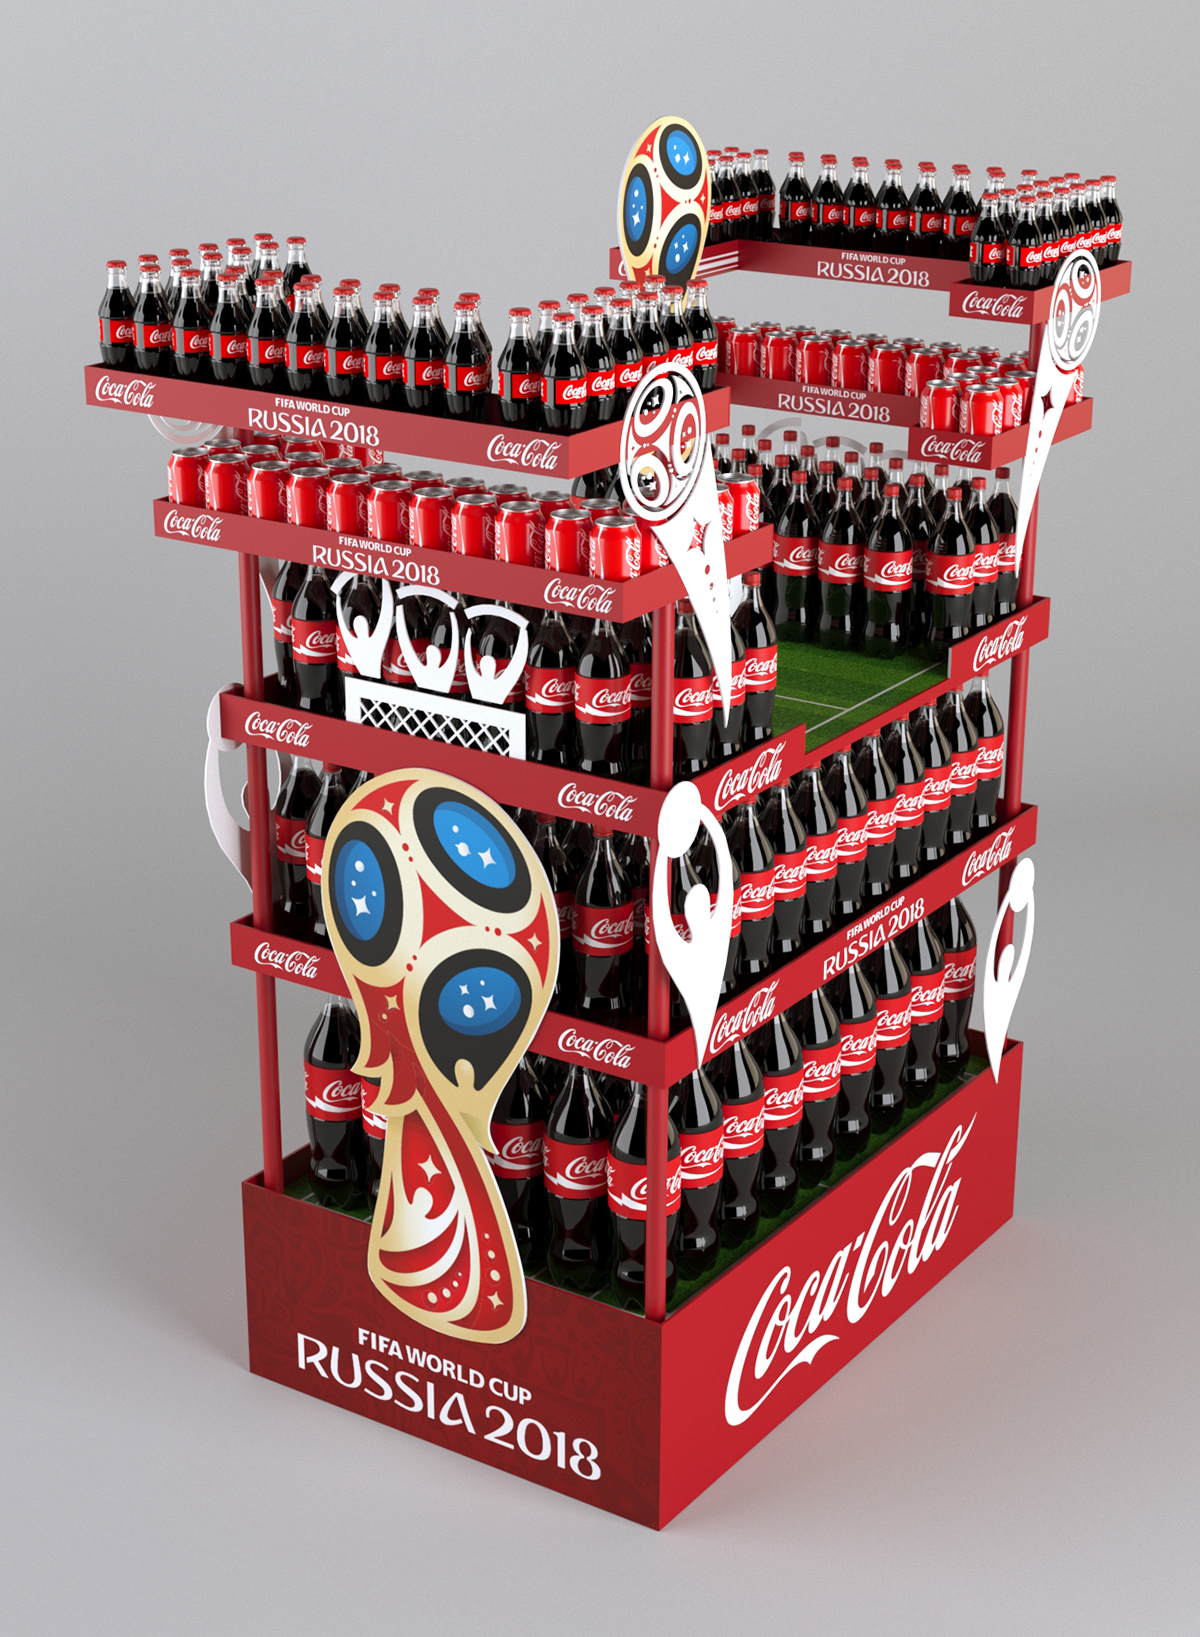 Coca Cola pos posm pop Maximov WorldCup Russia 2018 FIFA